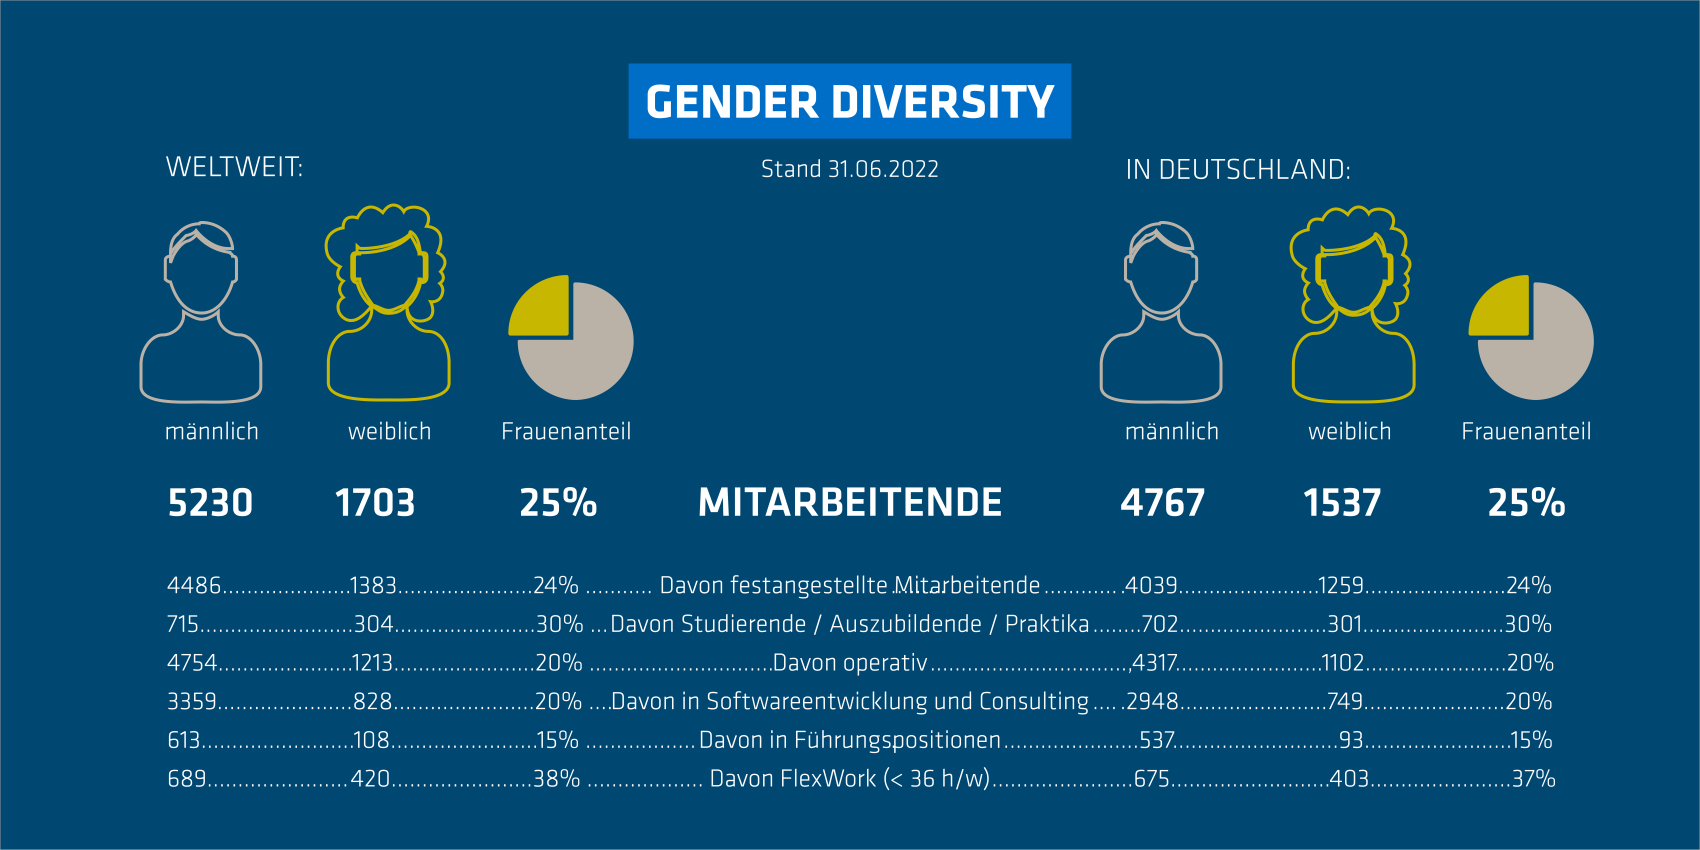 Gender Diversity - Die adesso-Welt in Zahlen